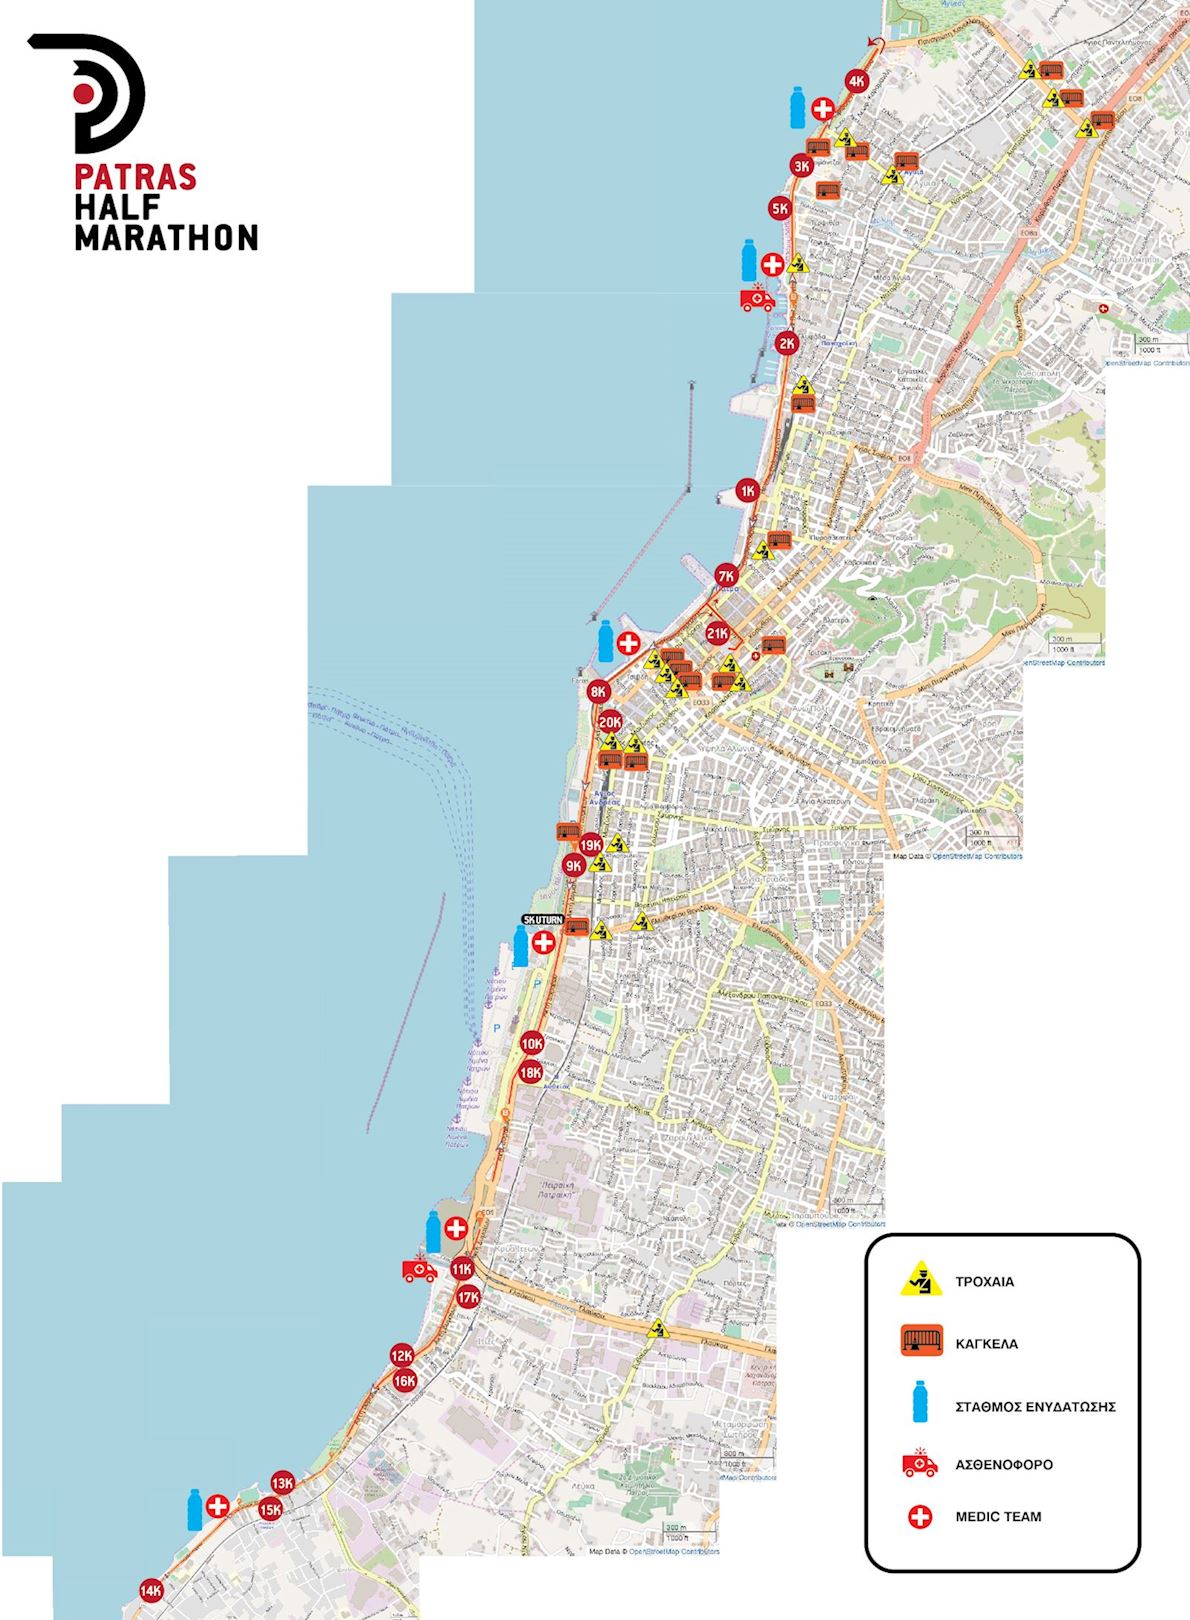 Patras Half Marathon Routenkarte